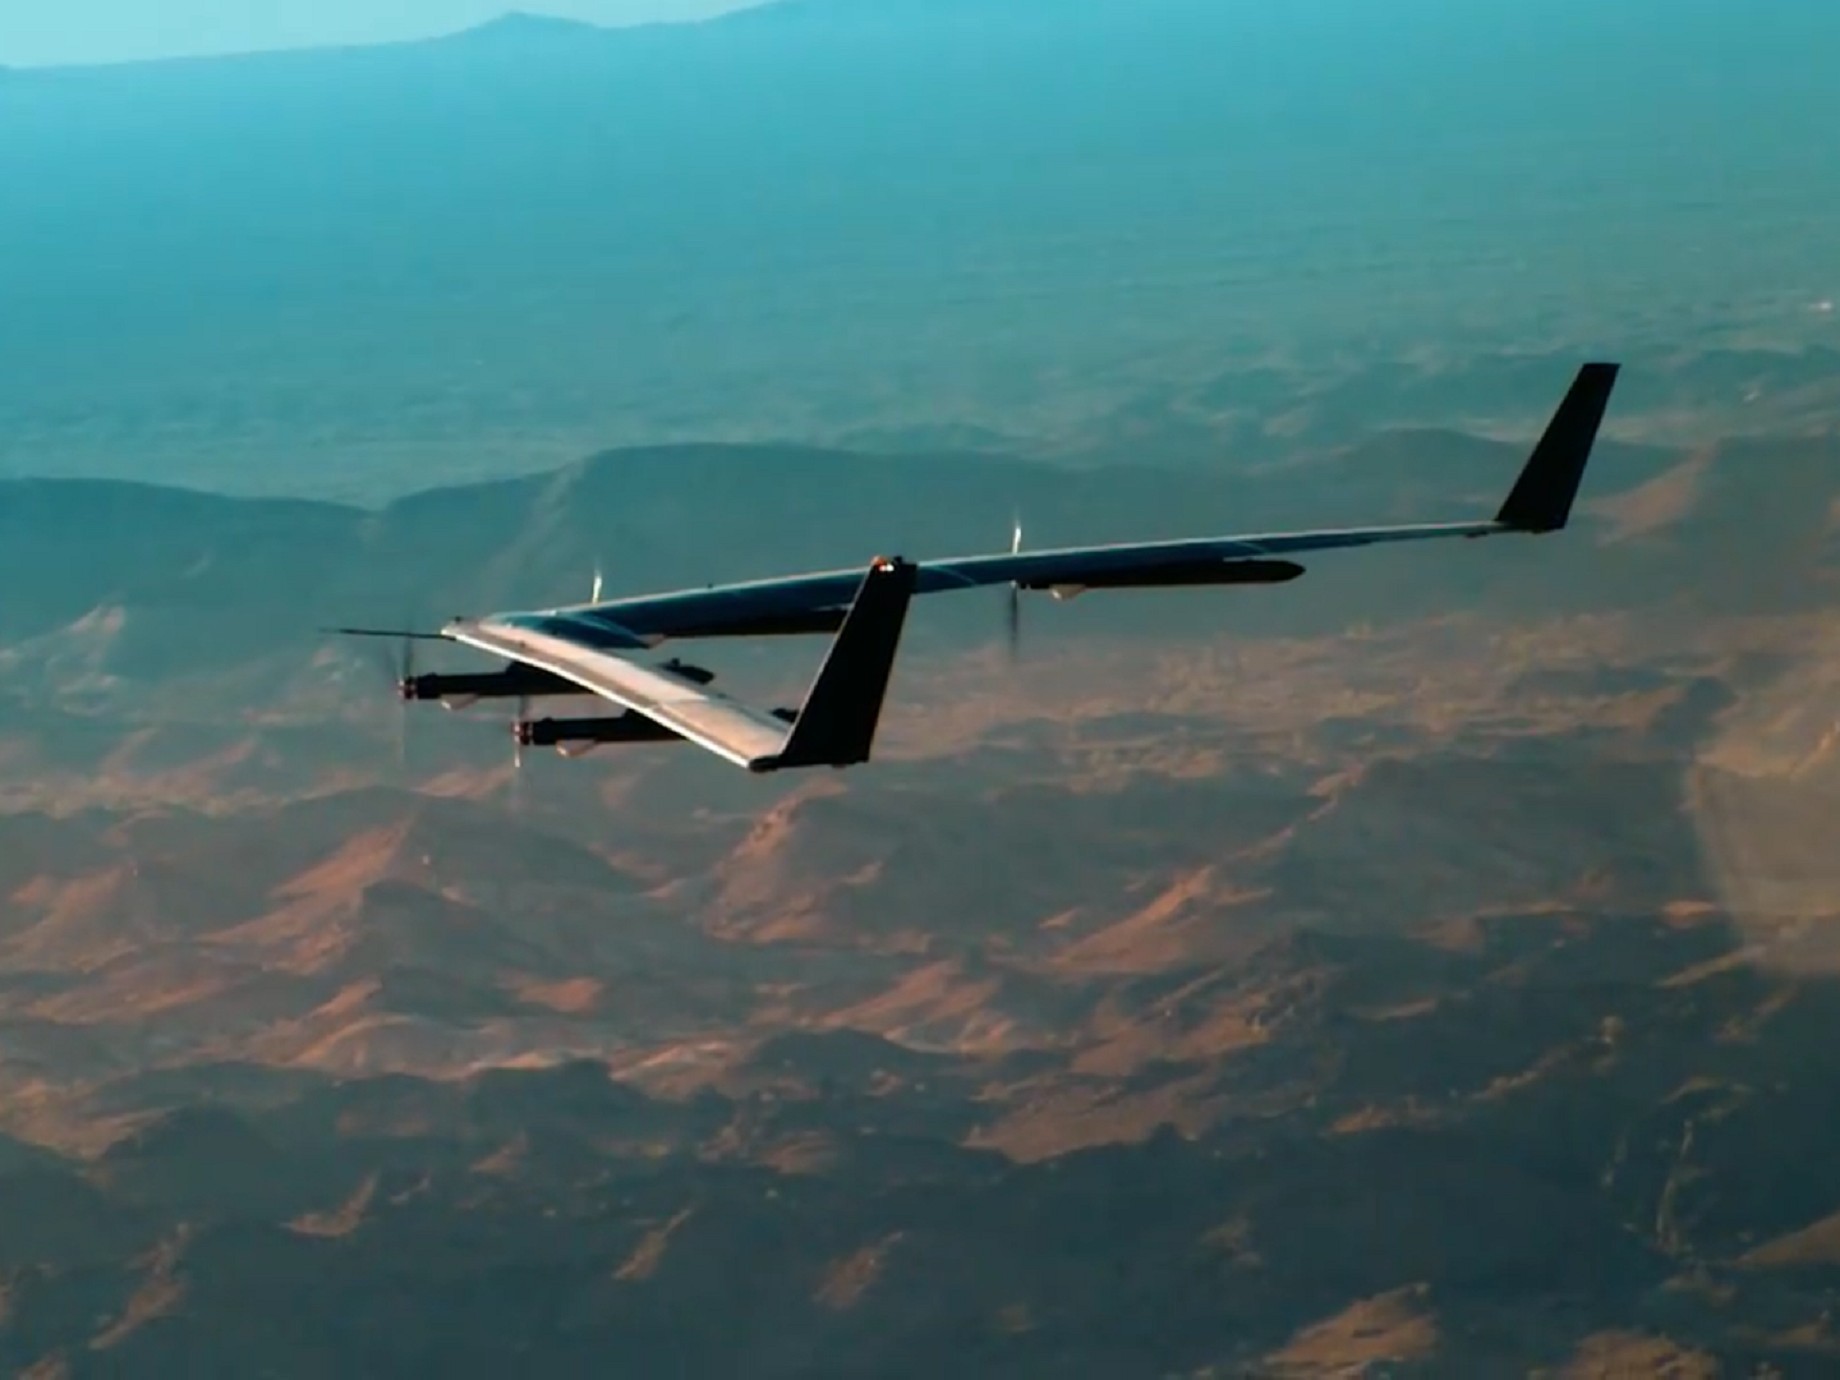 FB太陽能無人機 Aquila 試飛成功，要讓偏遠地區有網路可用